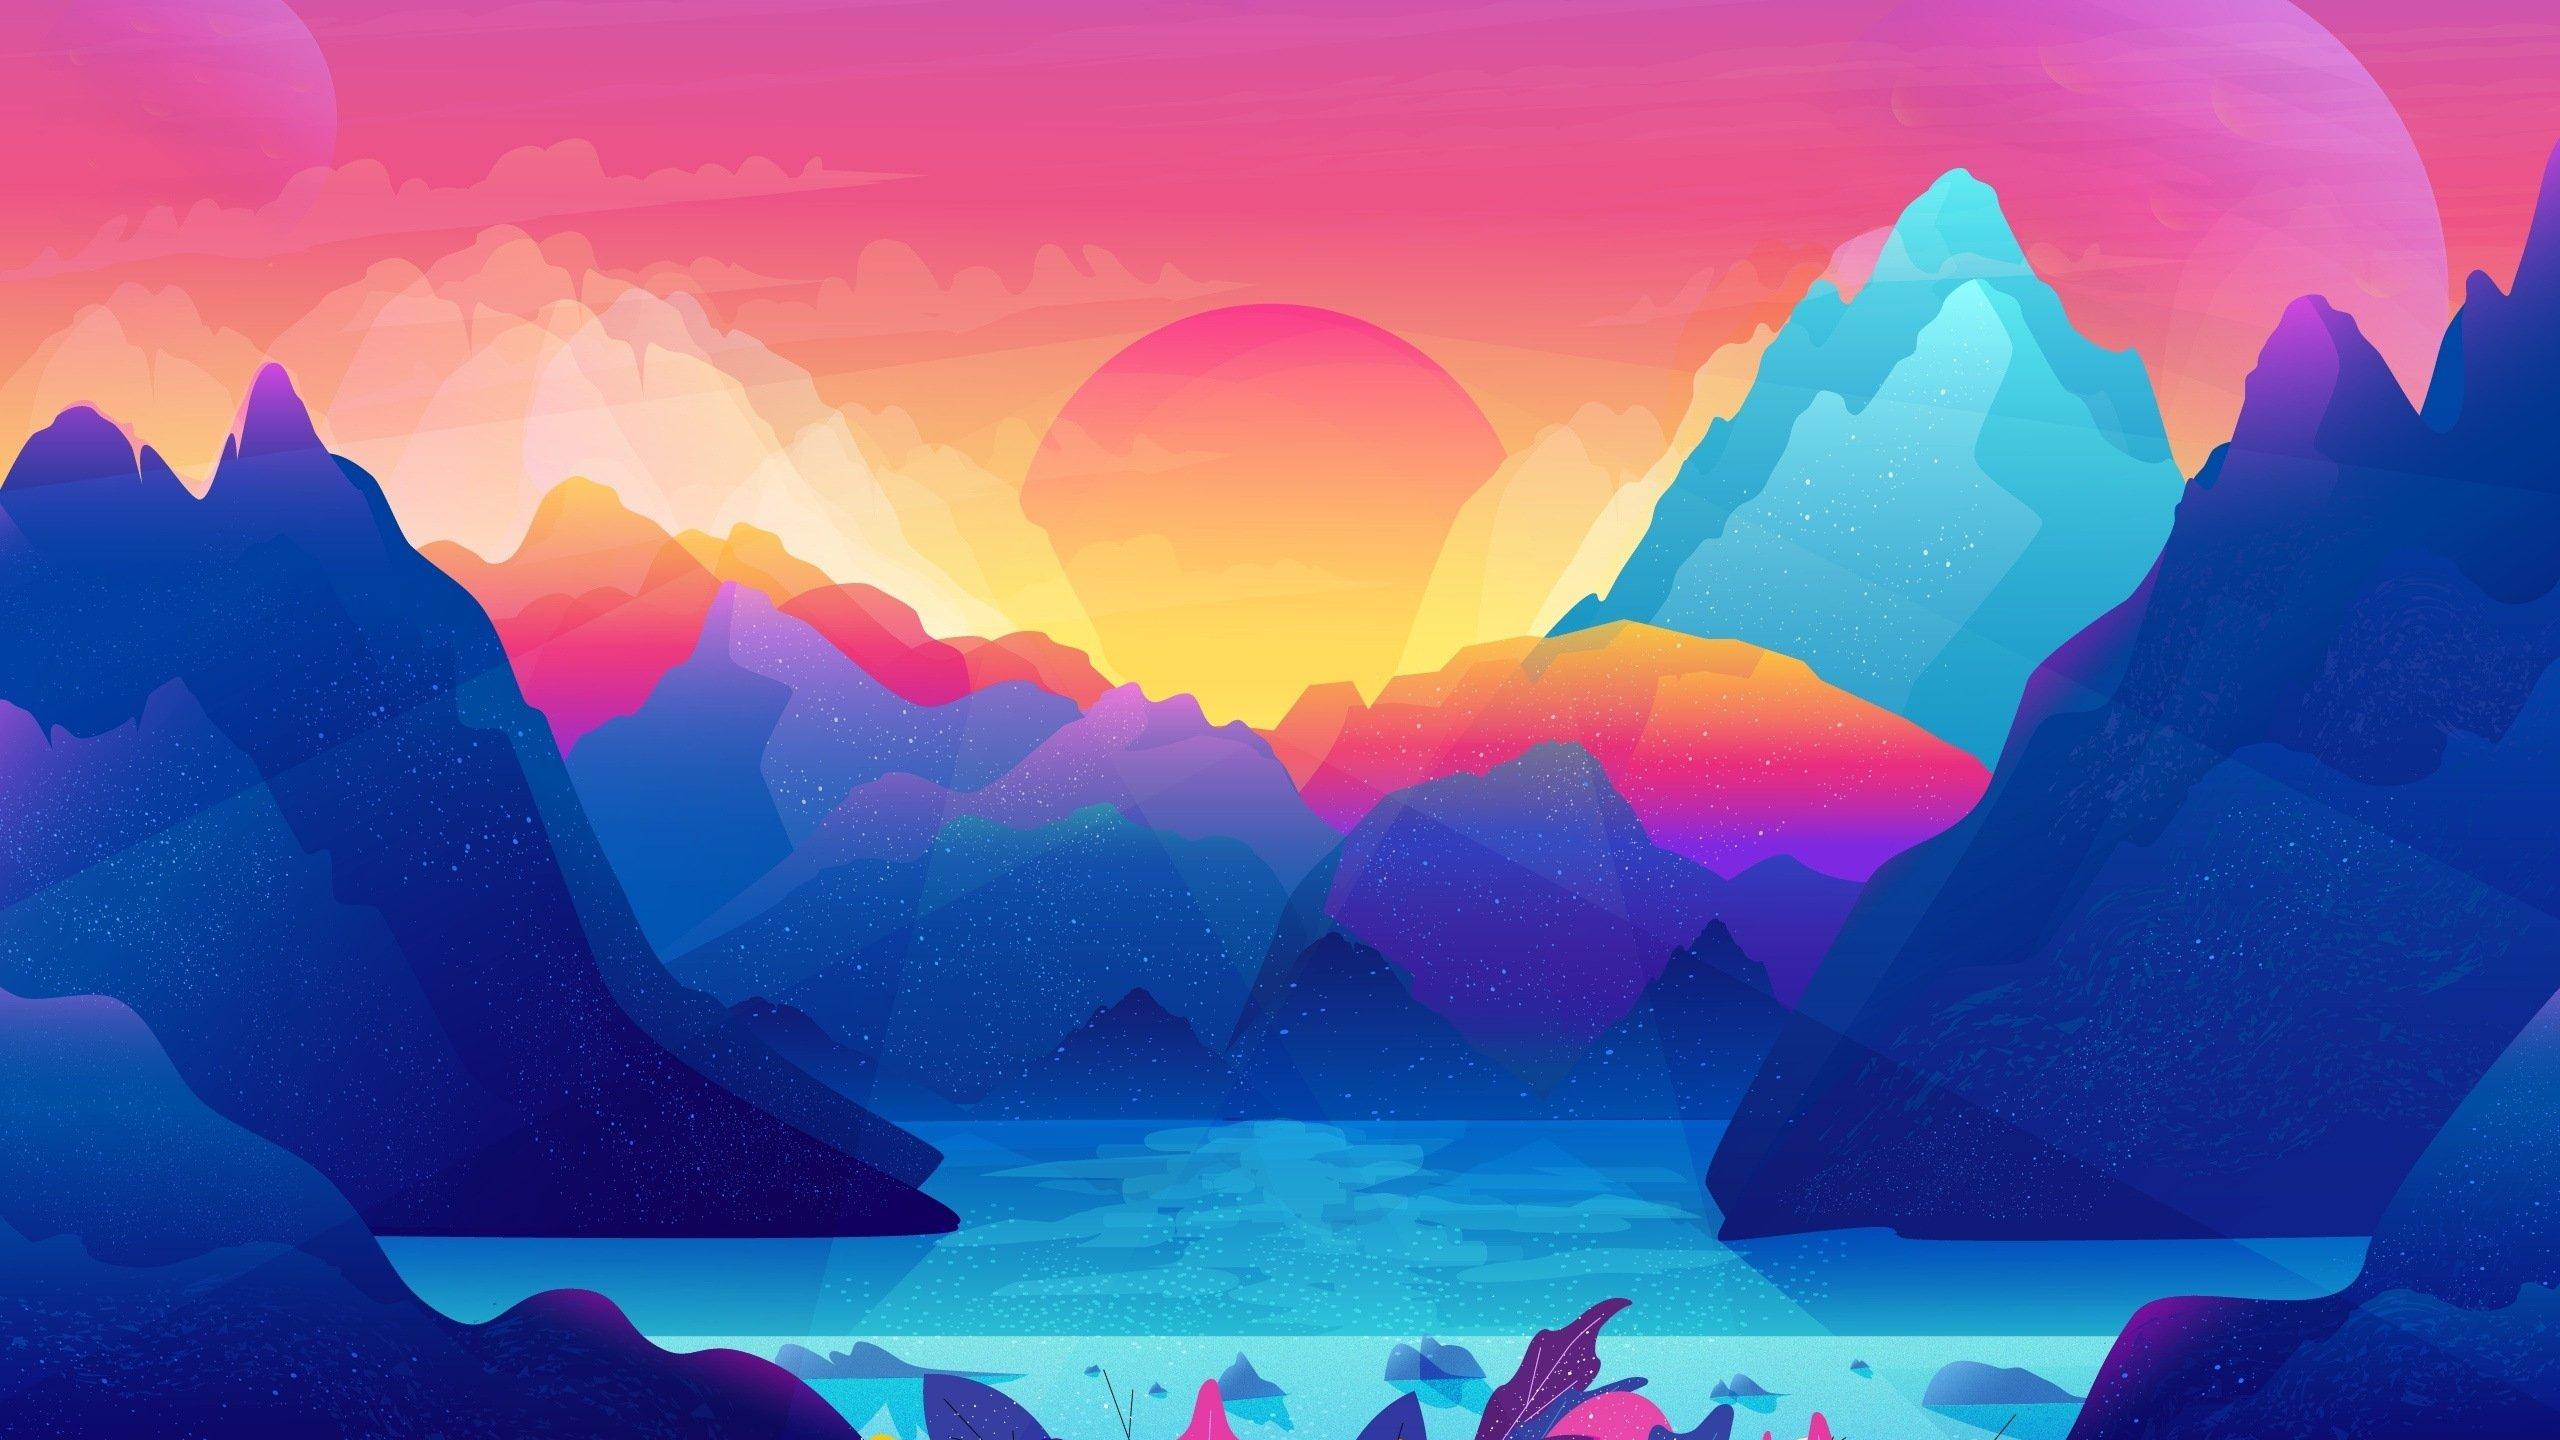 Mountains Sunset Digital Art Wallpaper Digital Art